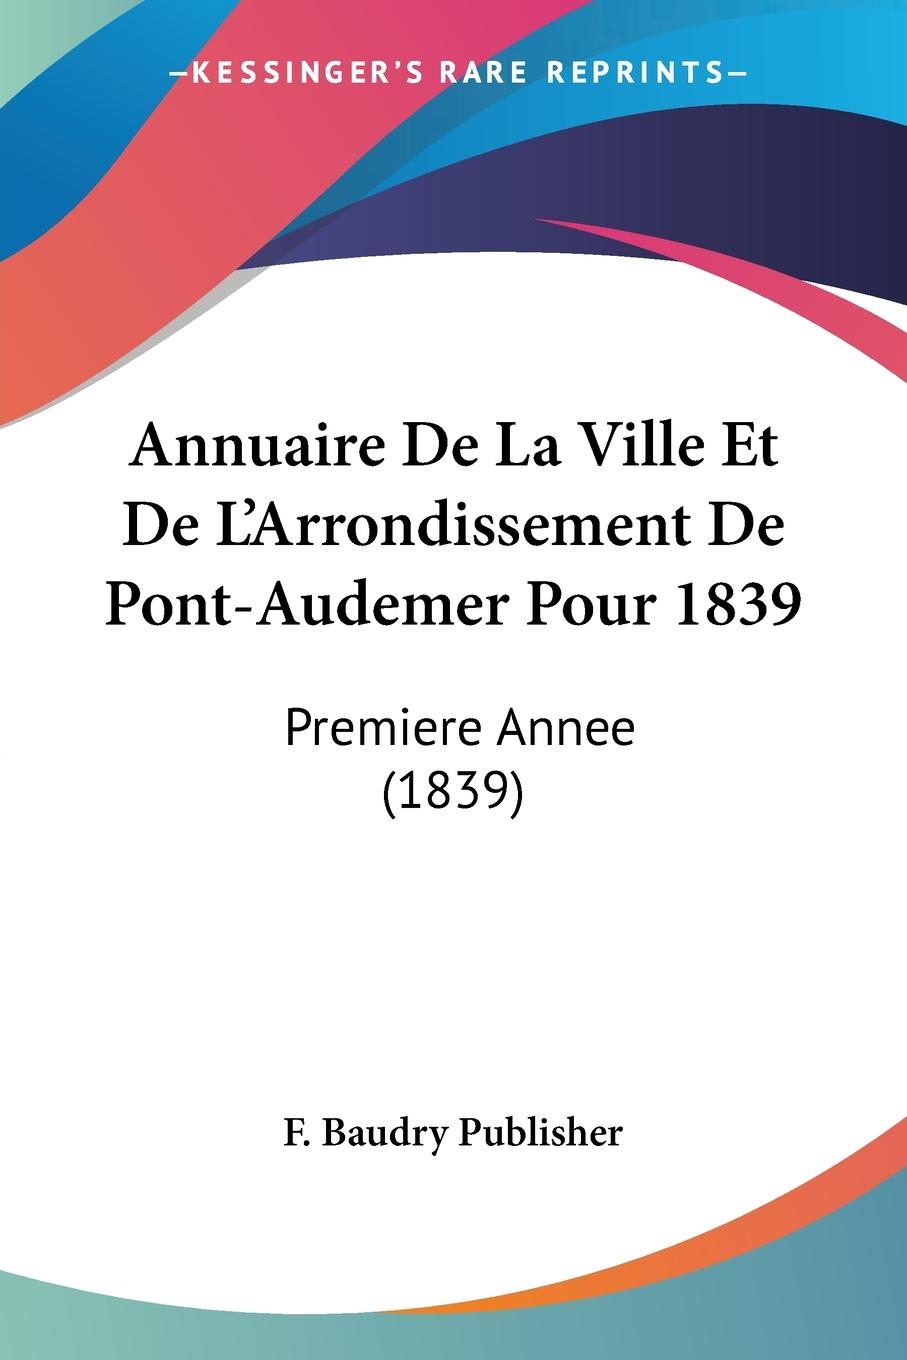 Annuaire De La Ville Et De L Arrondissement De Pont-Audemer Pour 1839 - F. Baudry Publisher